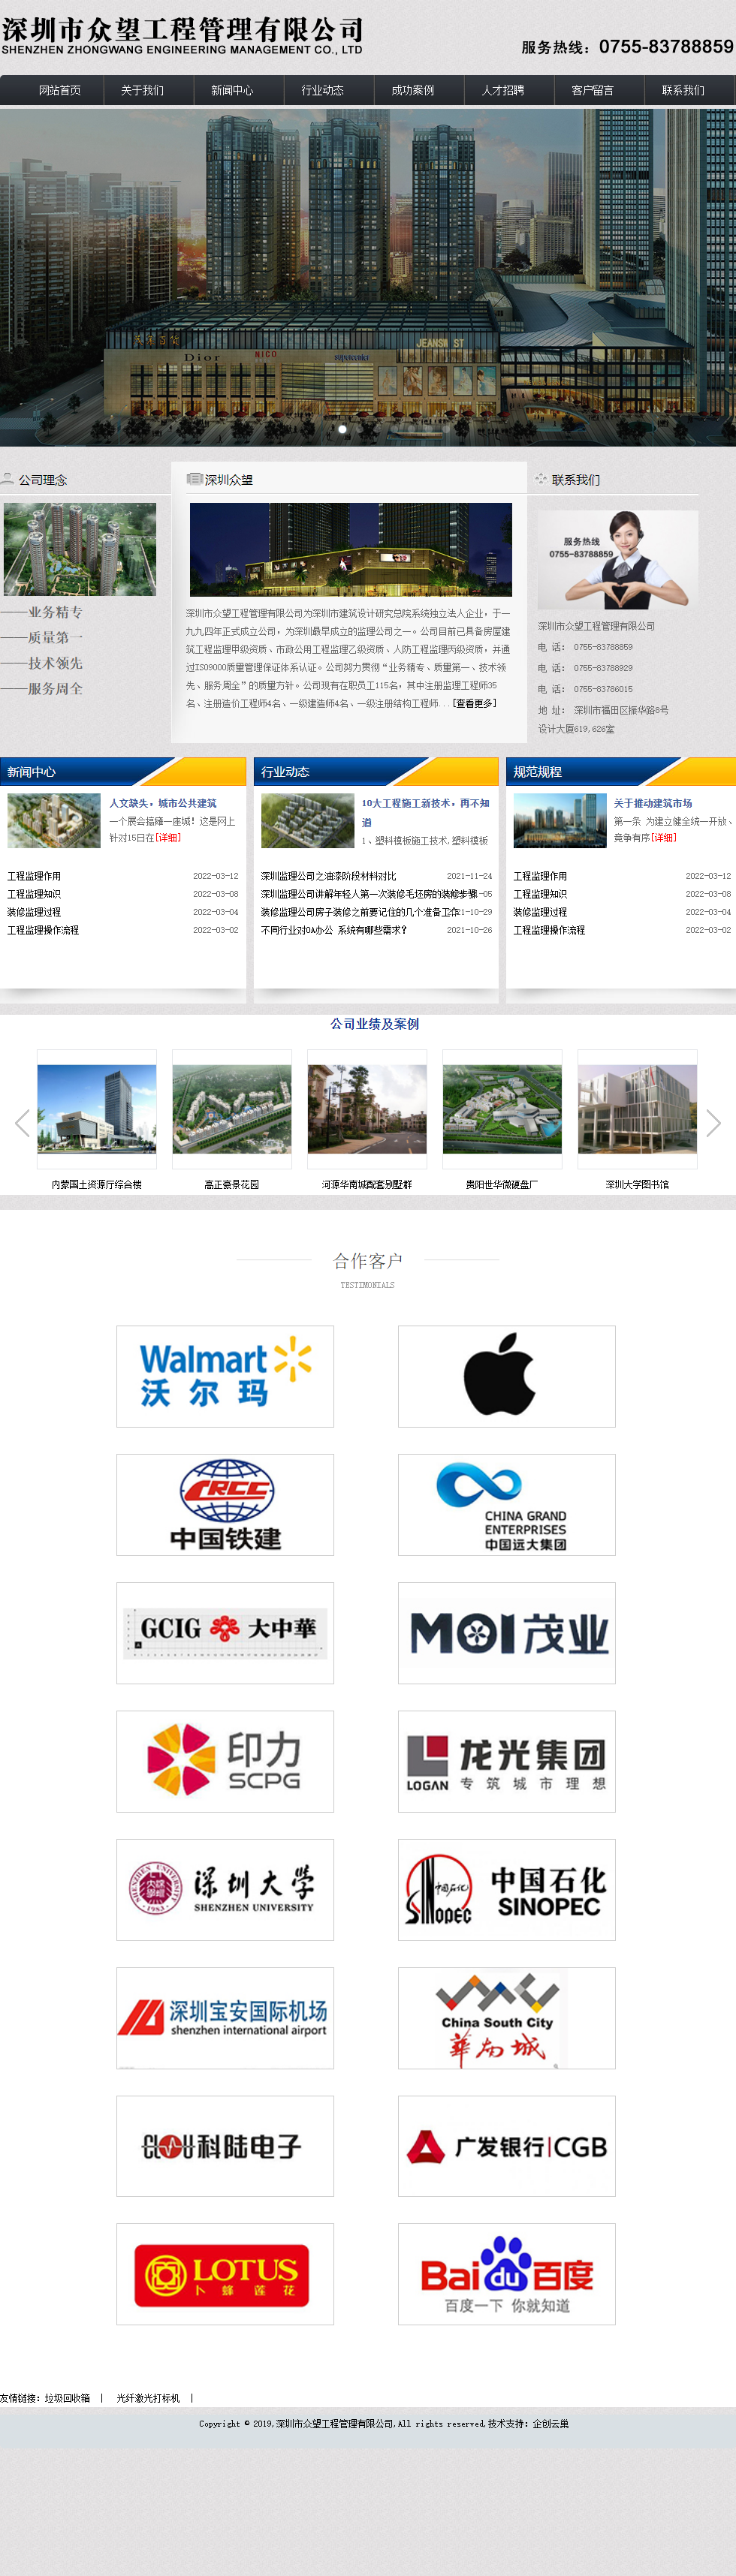 深圳市众望工程管理有限公司网站案例